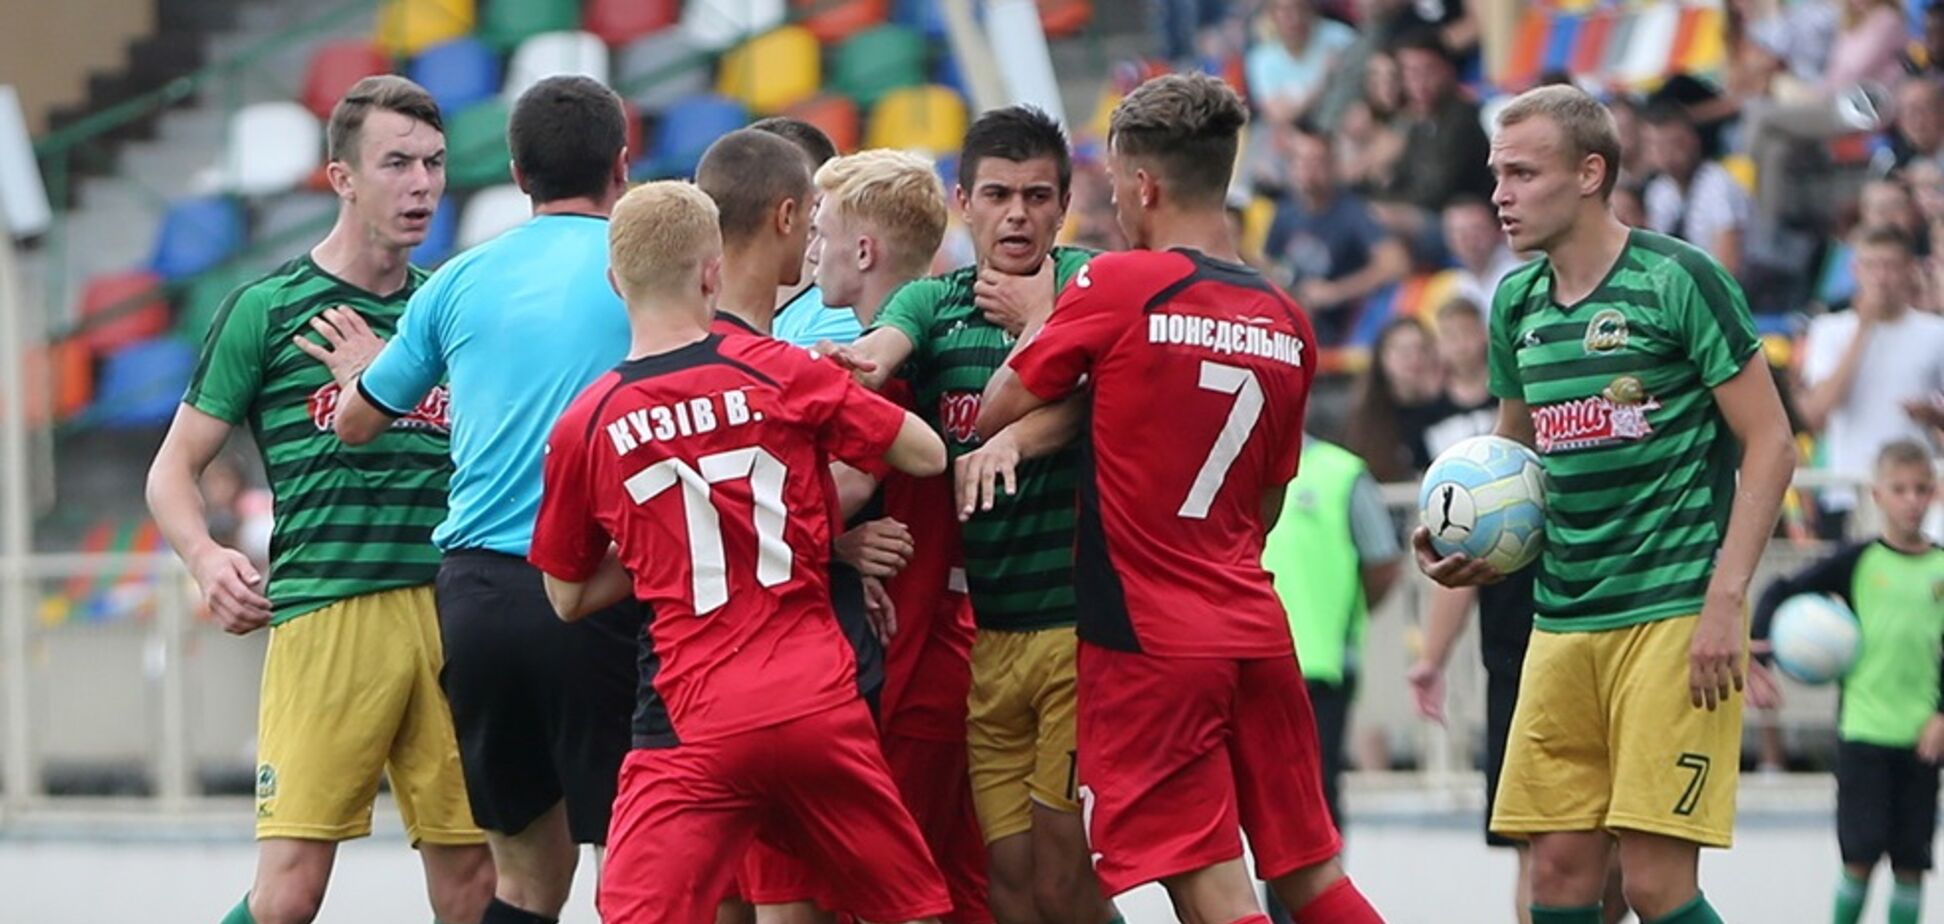 Лужа крови: украинский футболист получил опасное повреждение. Фото 18+